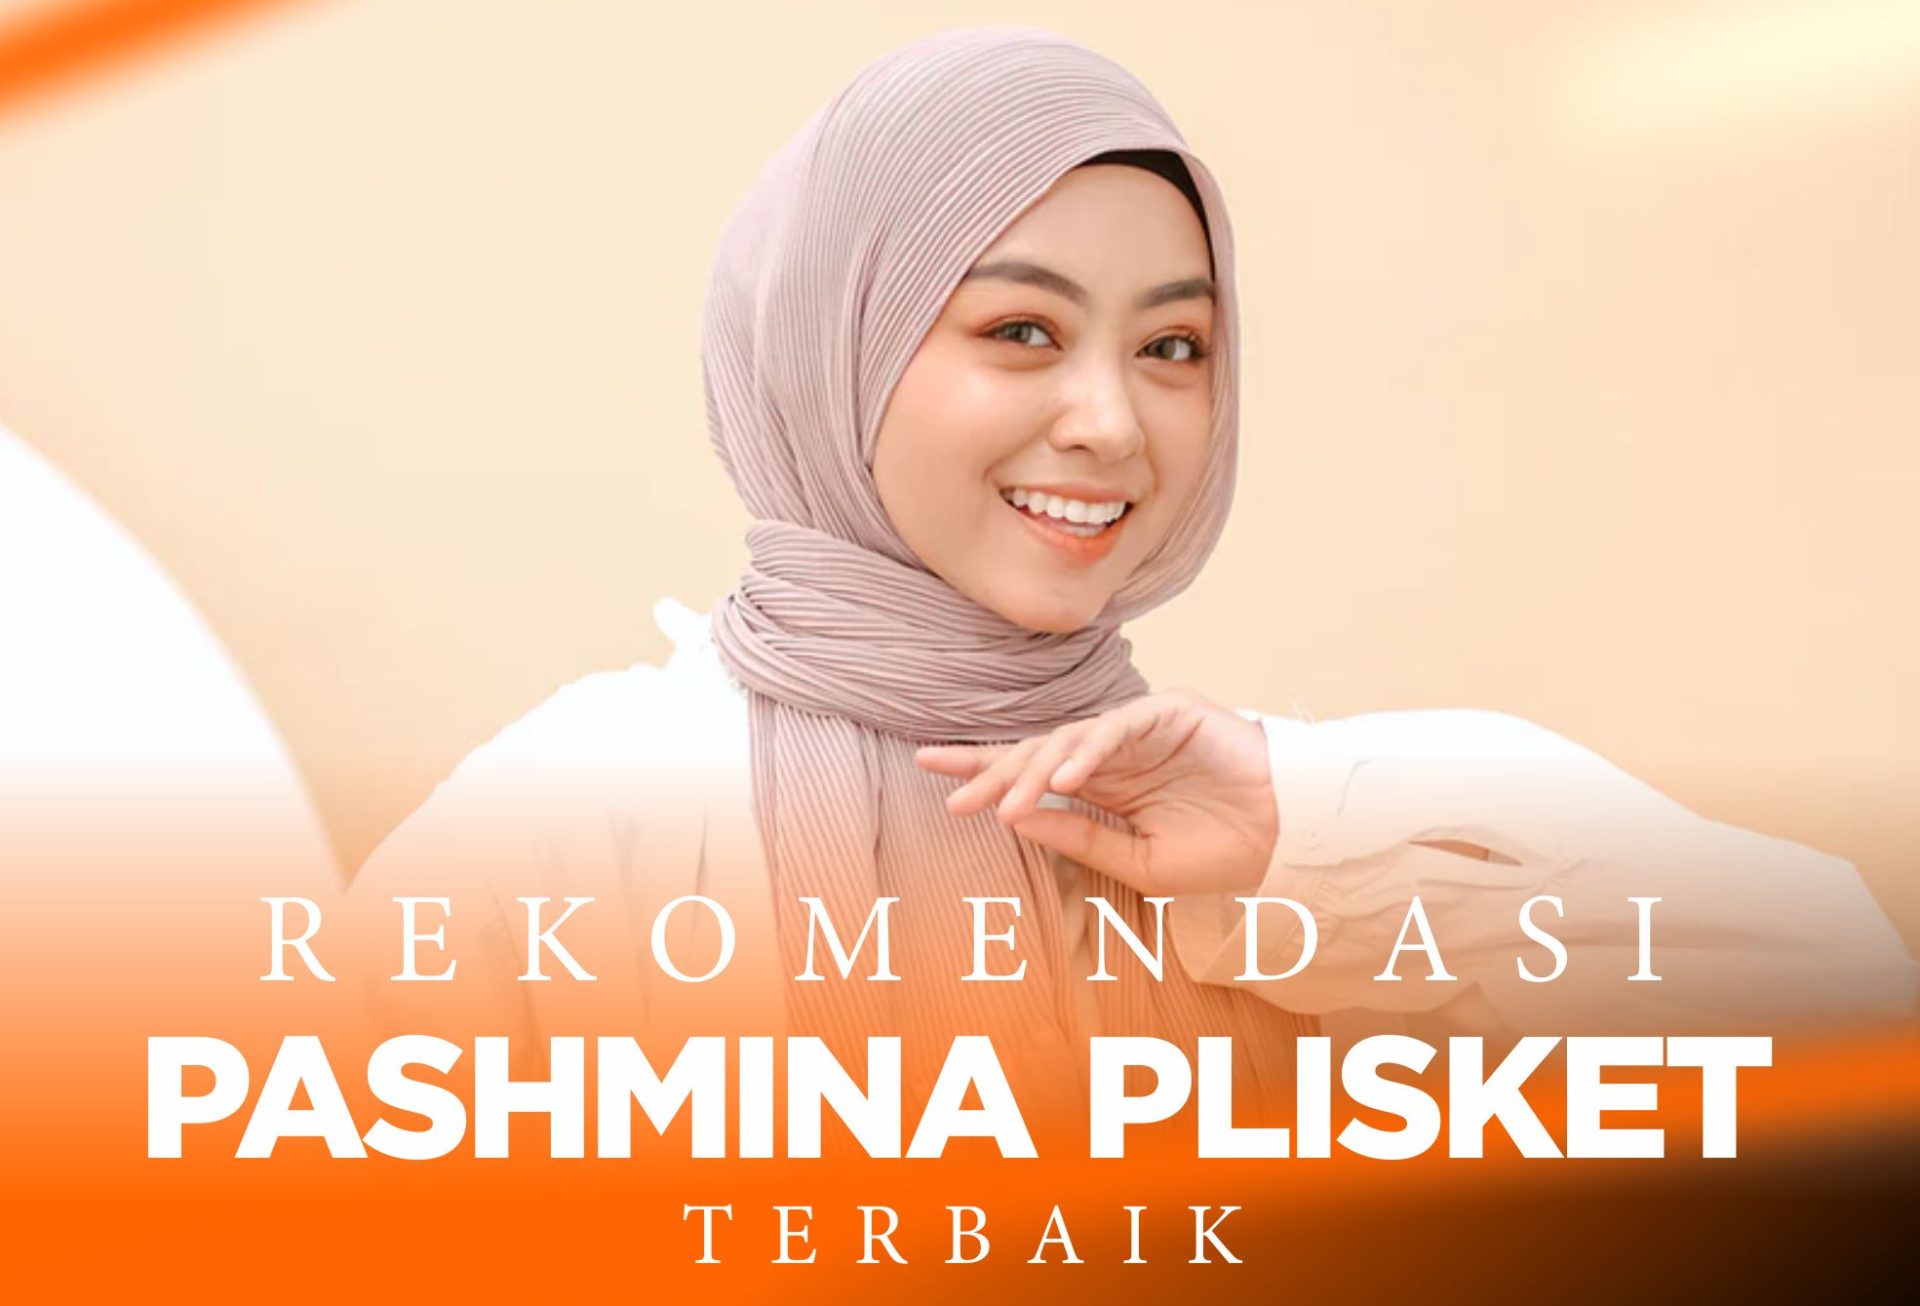 10 Rekomendasi Hijab Pashmina Plisket Terbaik !